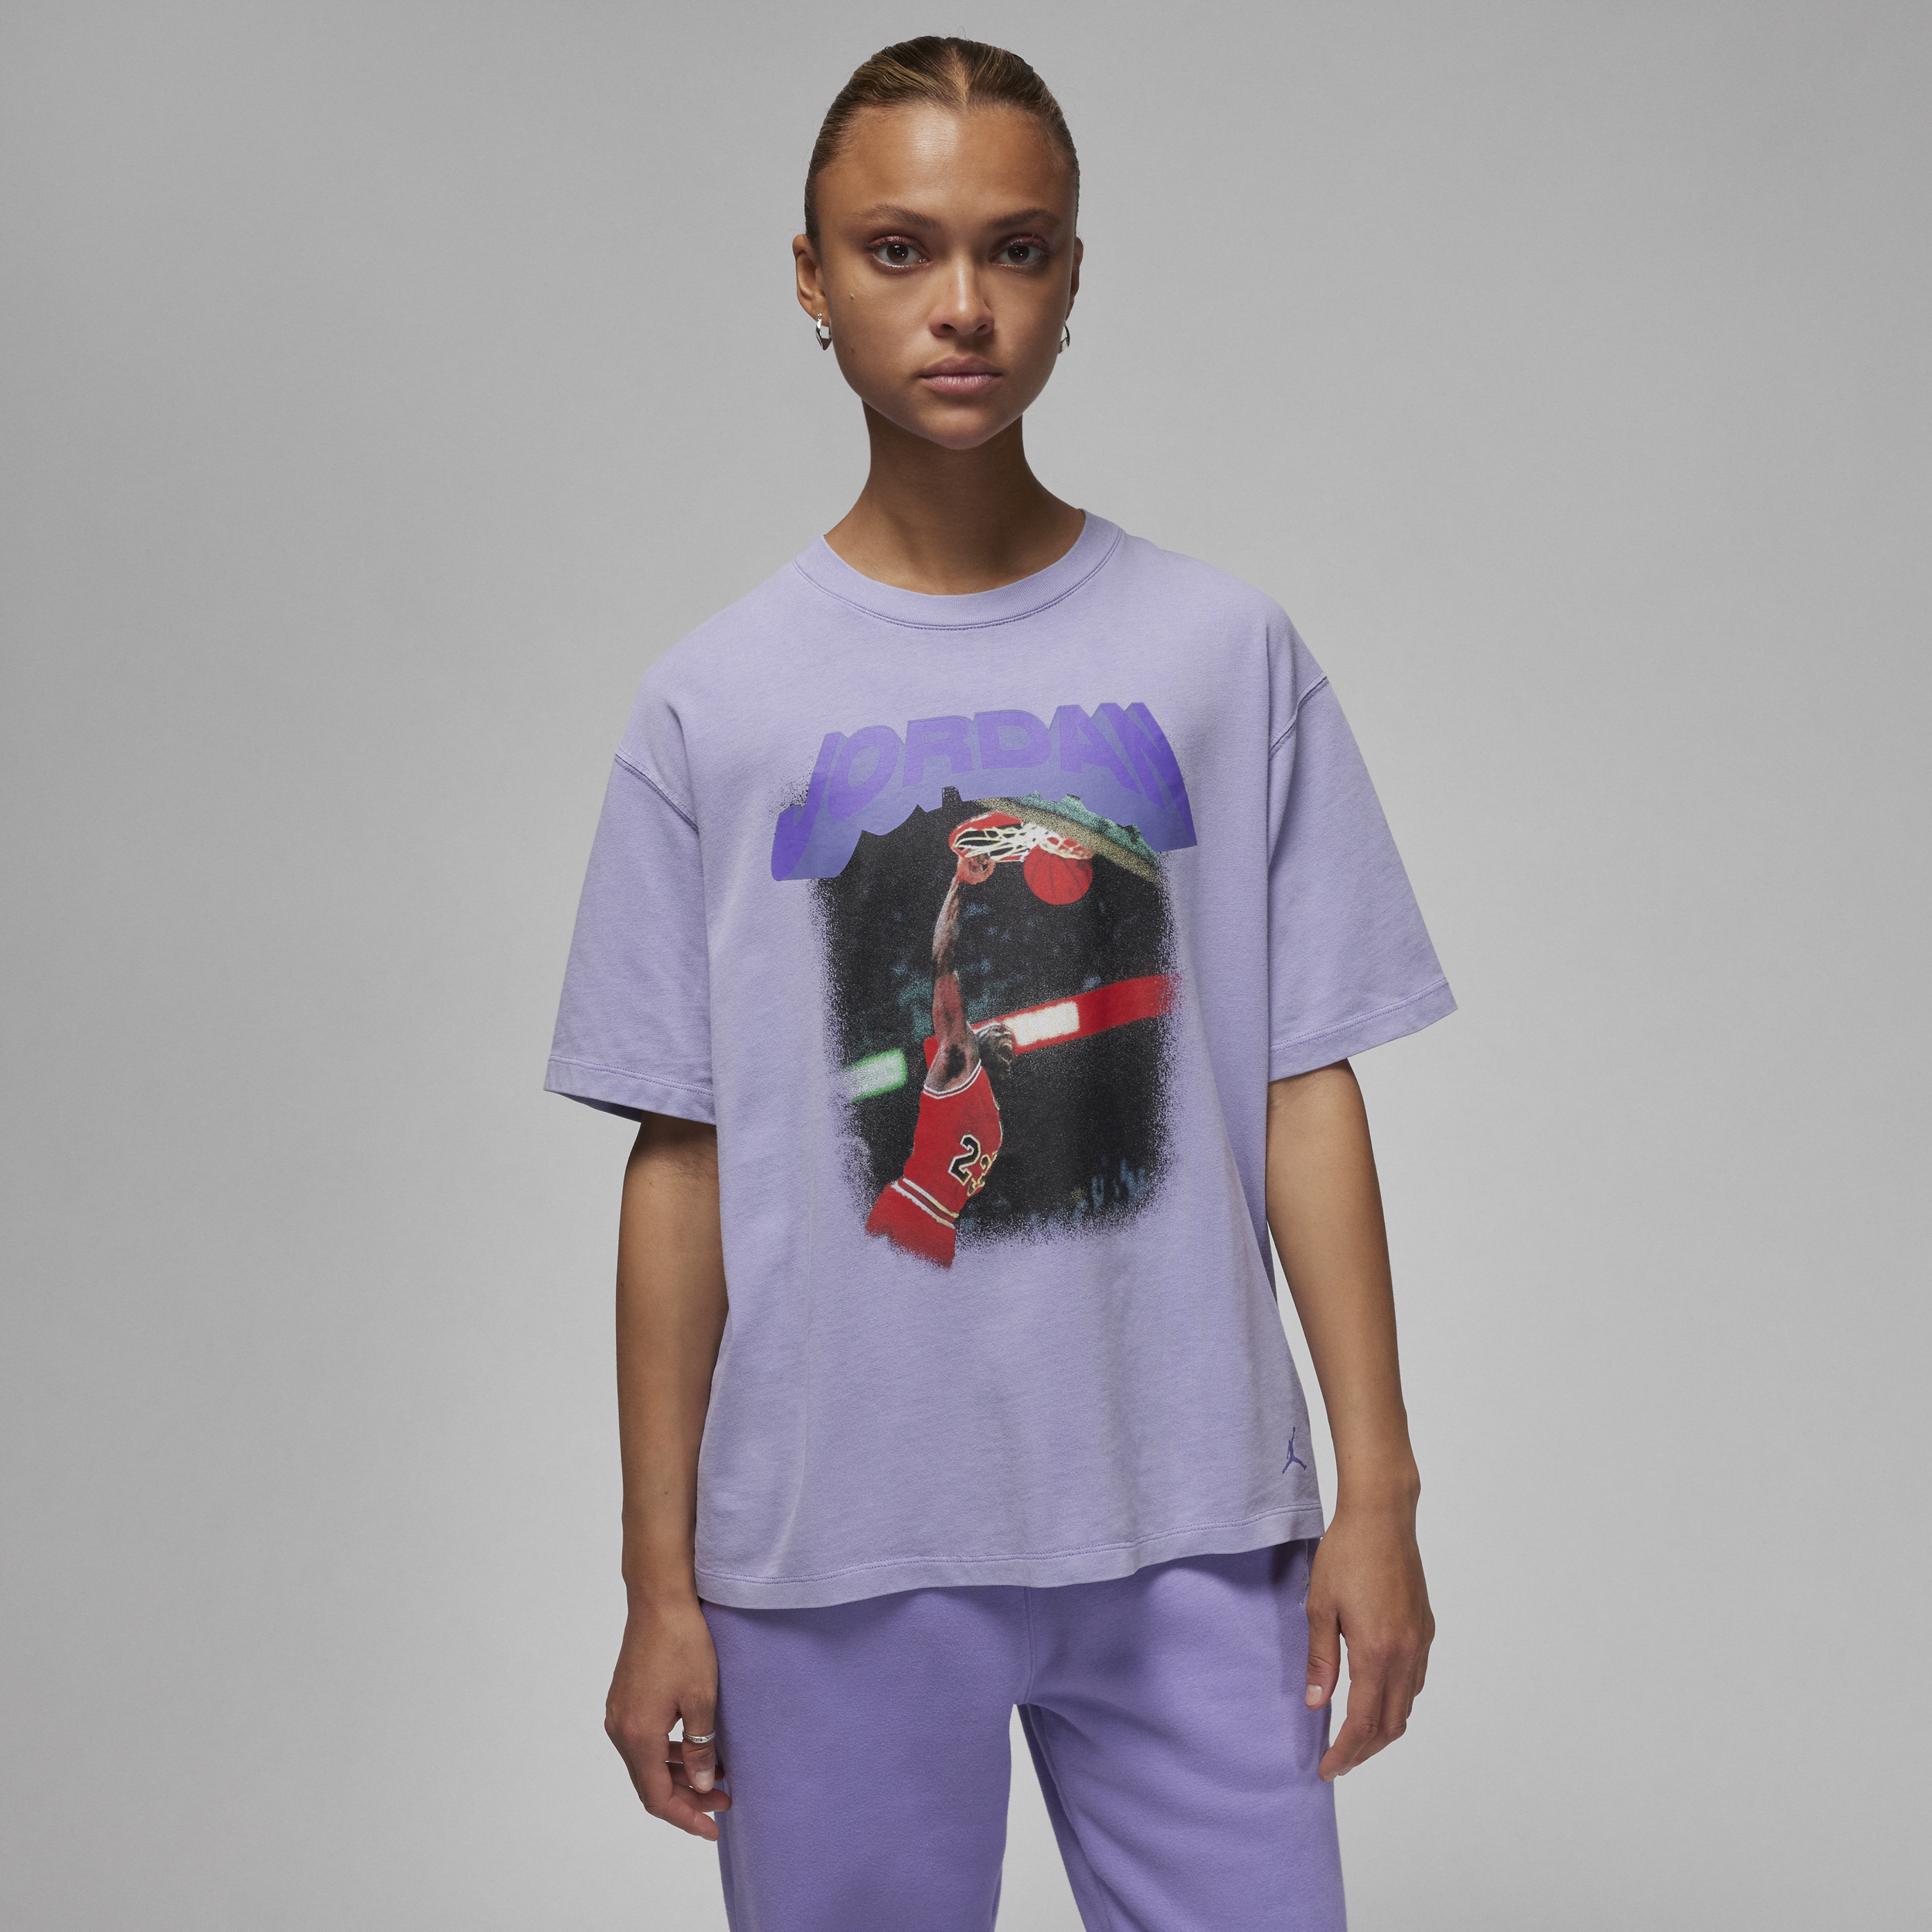 Jordan (Her)itage Camiseta con estampado - Mujer - Morado